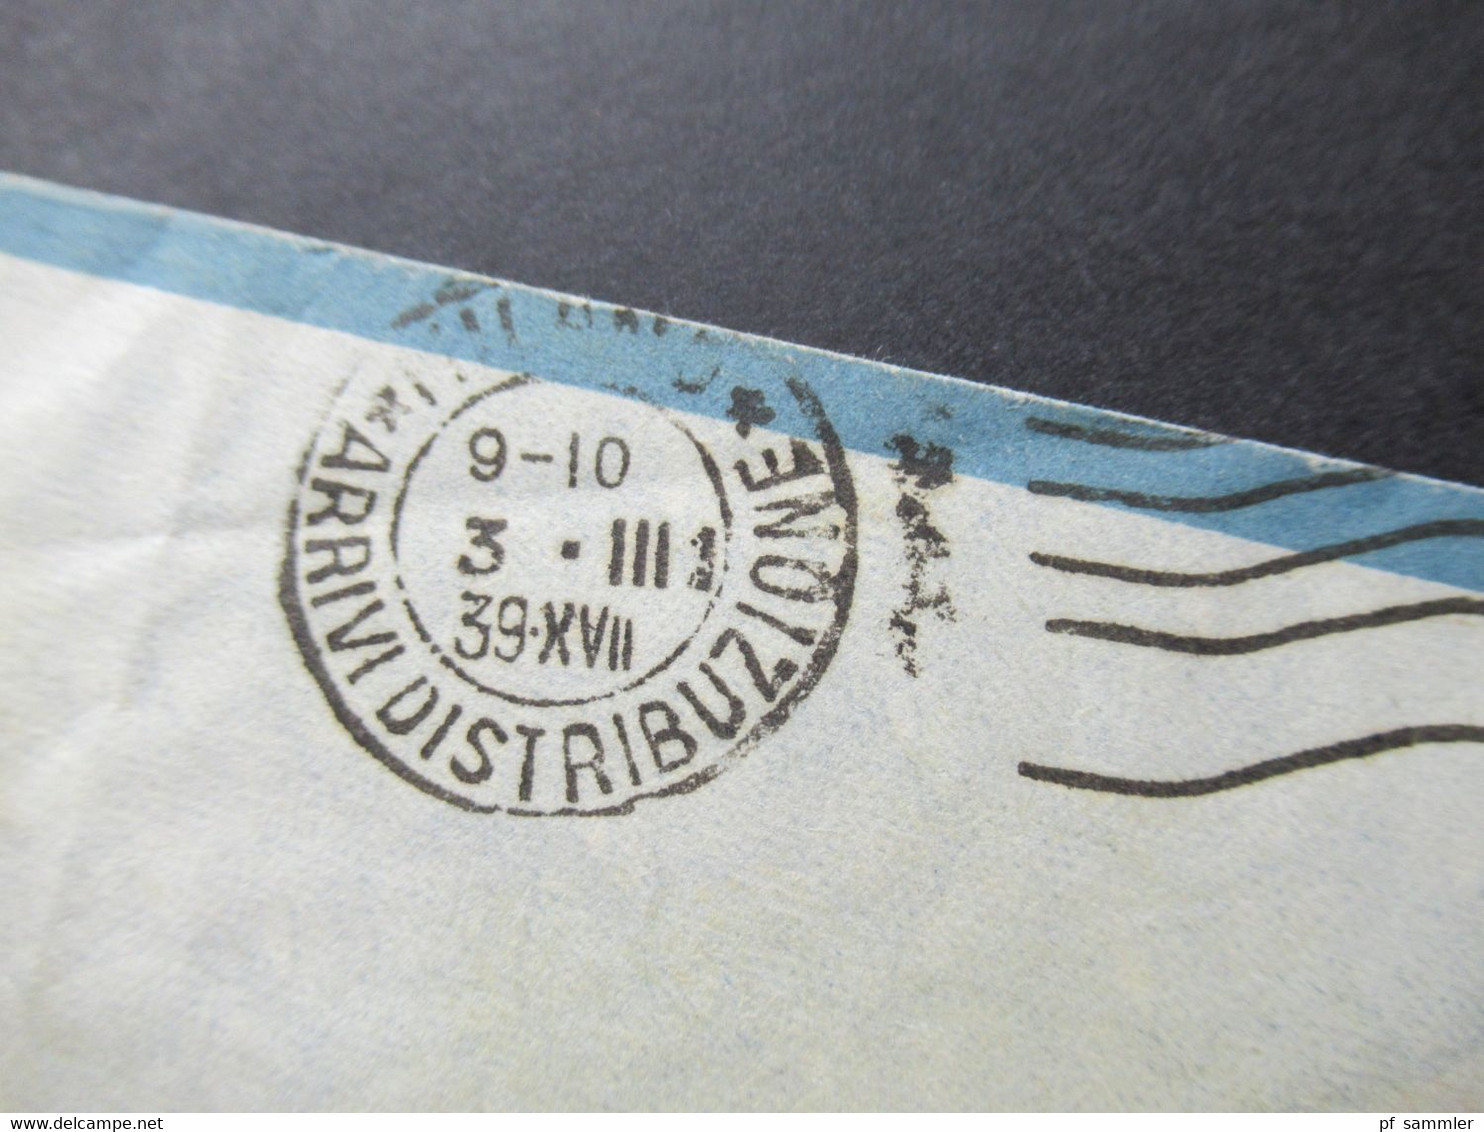 Italien Kolonie Eritrea Luftpost Posta Aerea / Air Mail Via Ala Littoria 1939 Abeba nach Milano